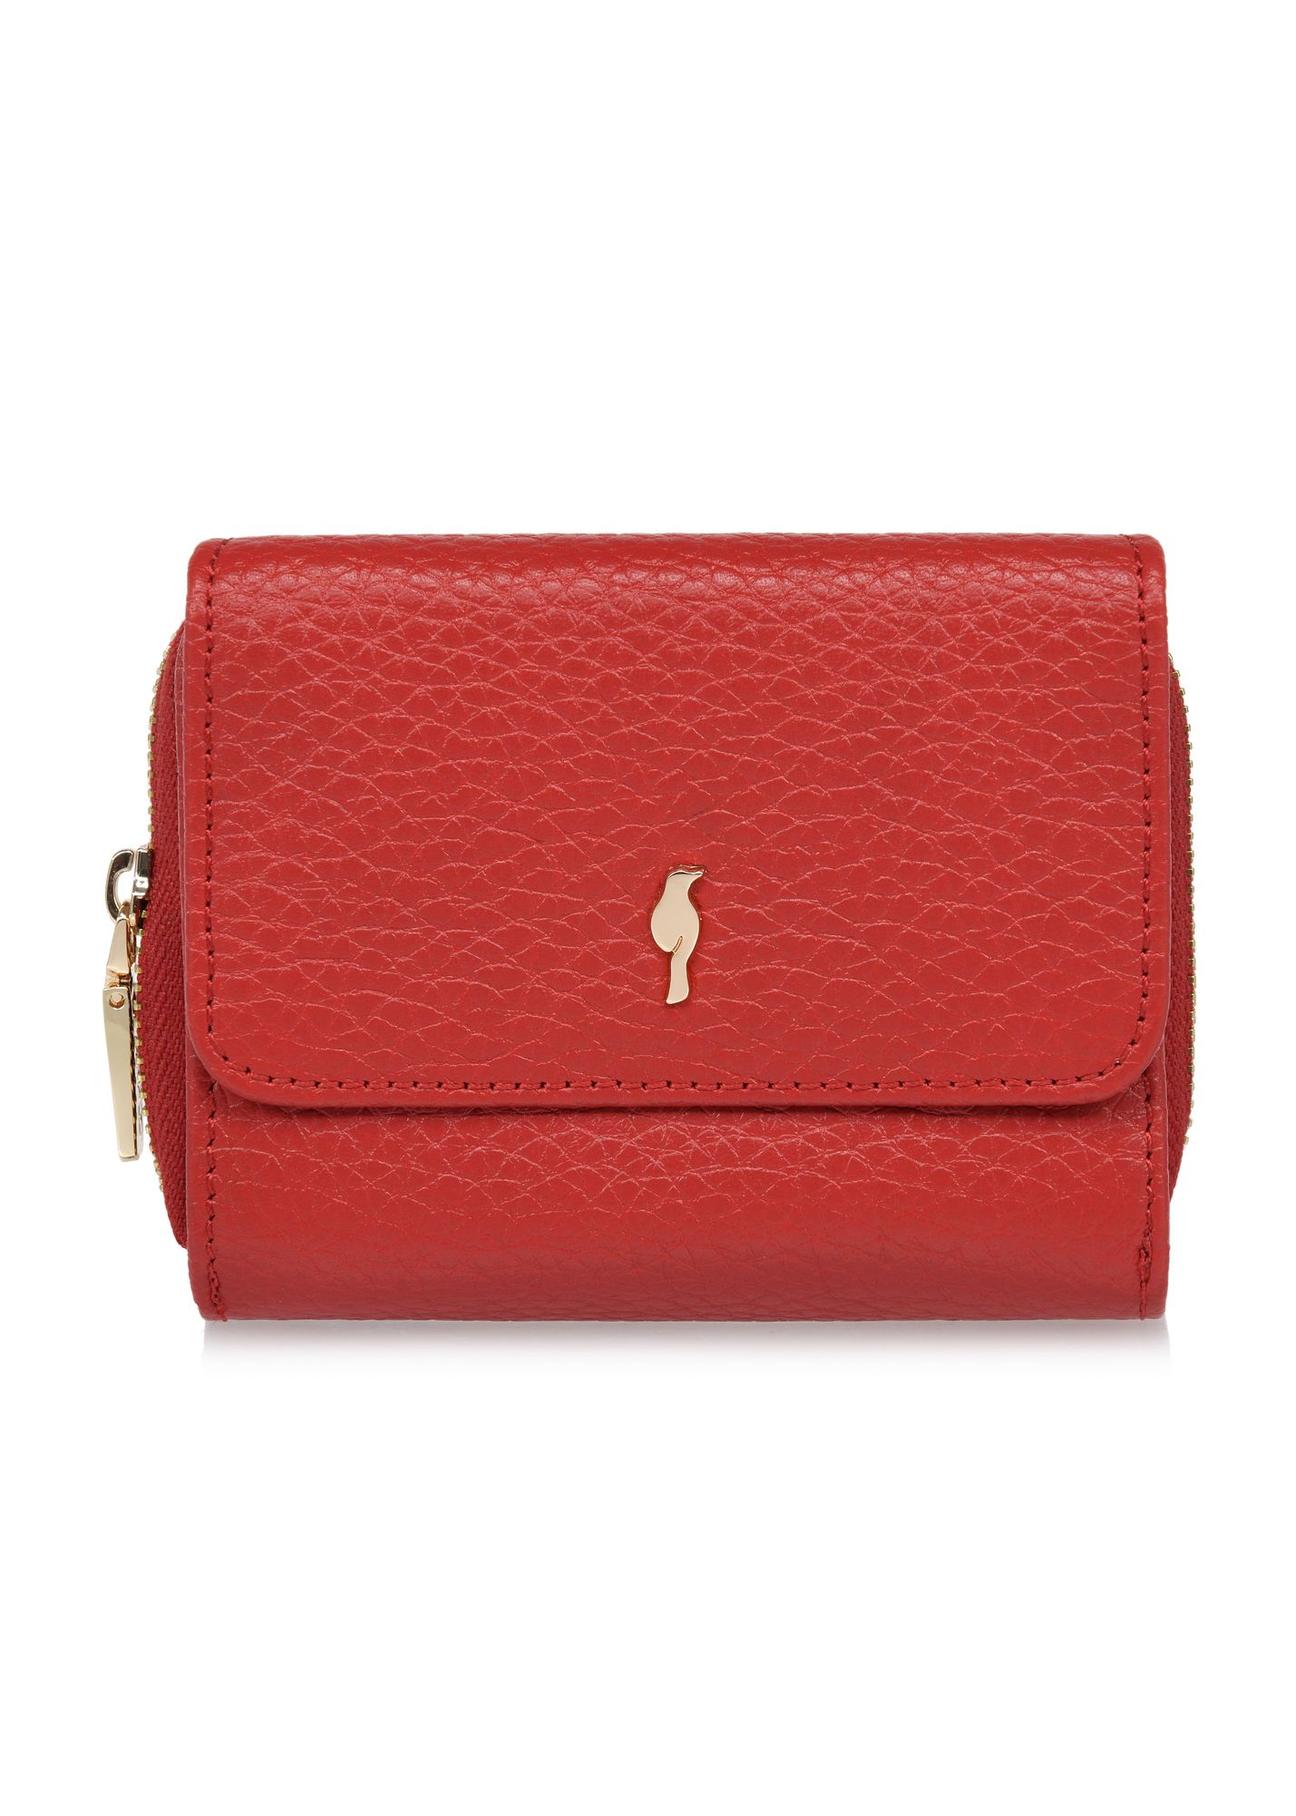 Czerwony skórzany portfel damski z ochroną RFID PORES-0817RFID-42(W24)